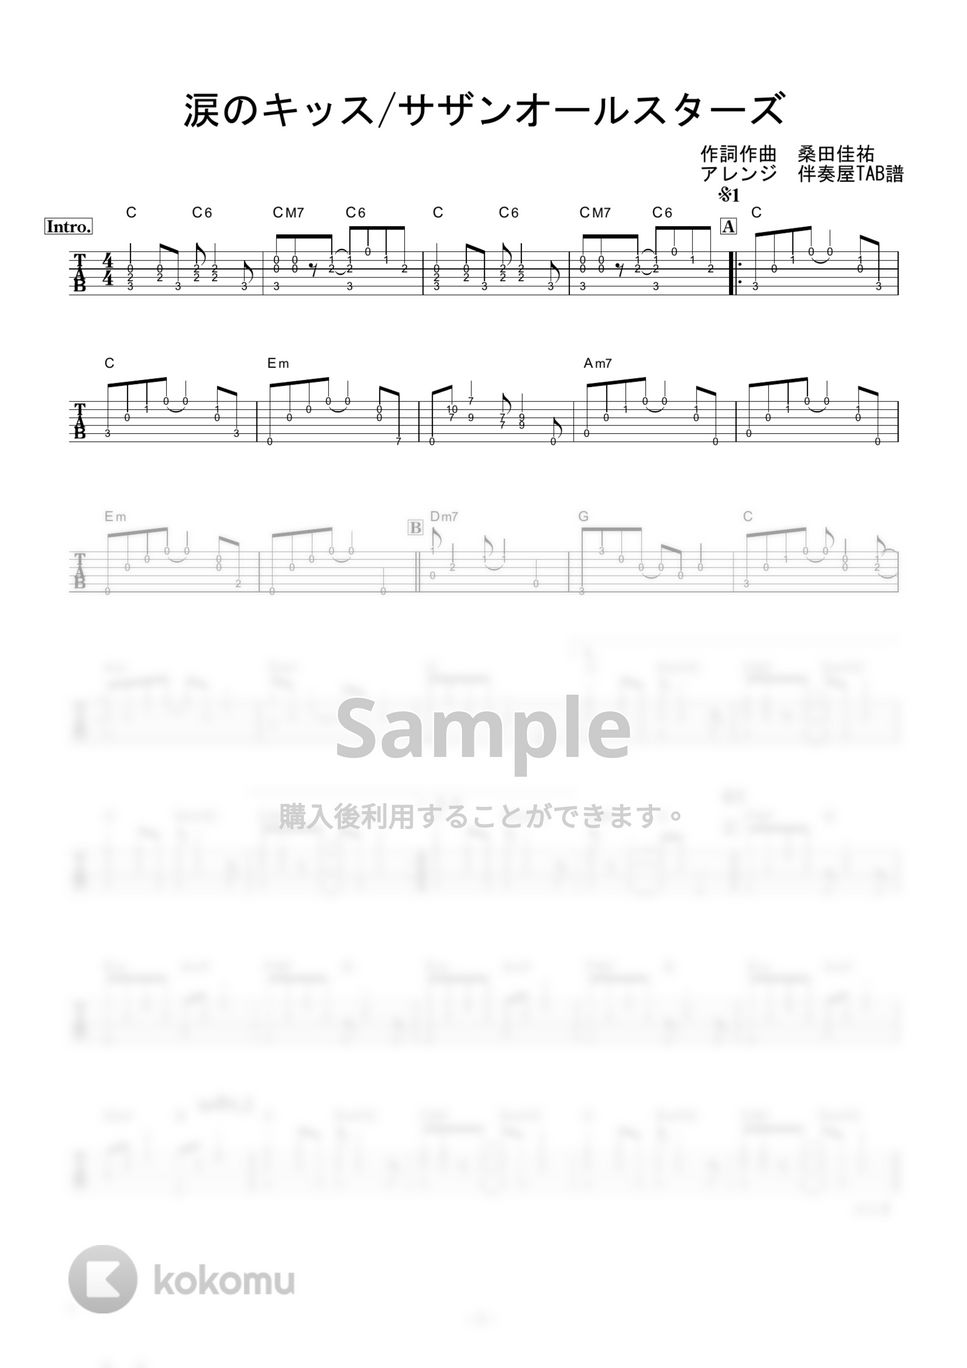 サザンオールスターズ - 涙のキッス (ギター伴奏/イントロ・間奏ソロギター) by 伴奏屋TAB譜